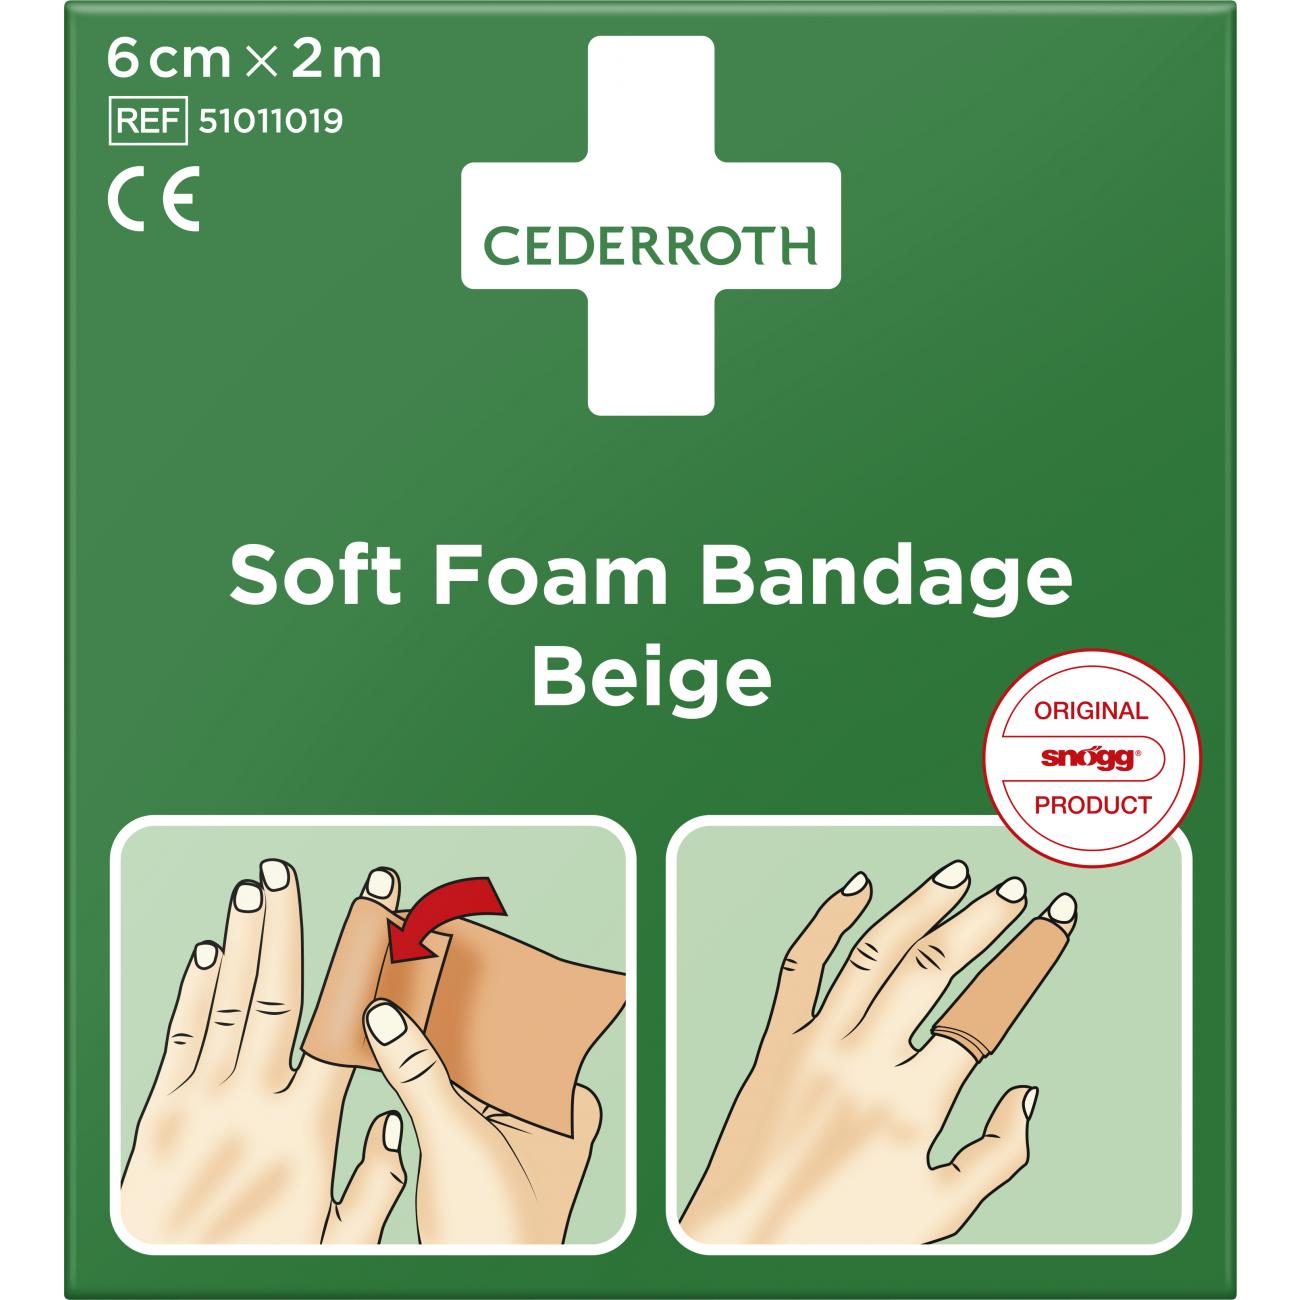 Cederroth Soft Foam Bandage Beige 6 Cm X 2 M